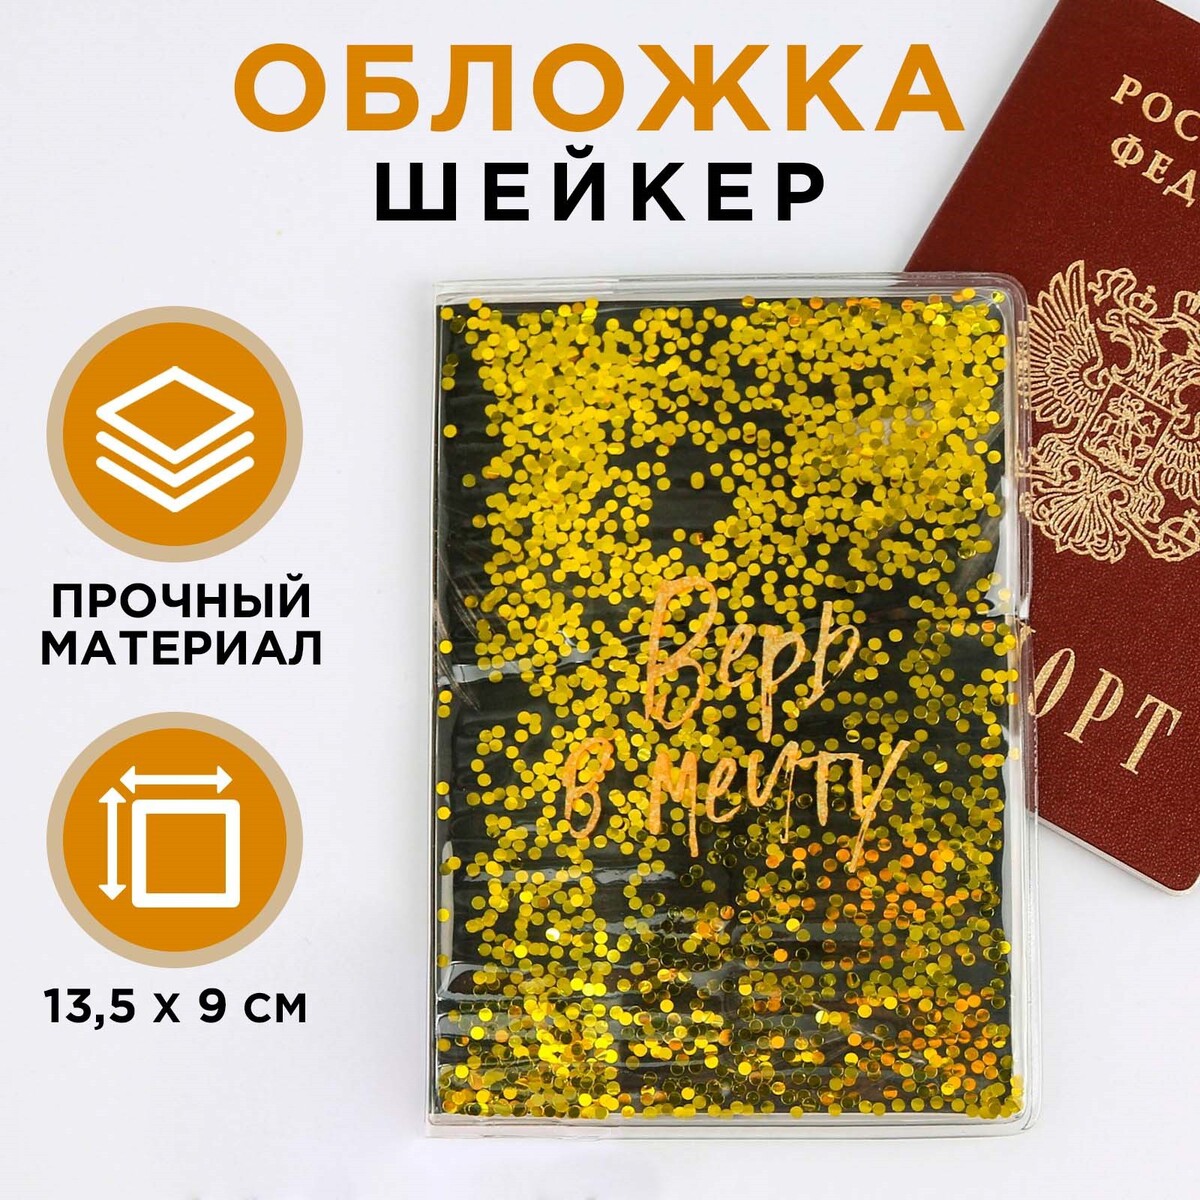 Обложка-шейкер для паспорта обложка шейкер для паспорта van gogh